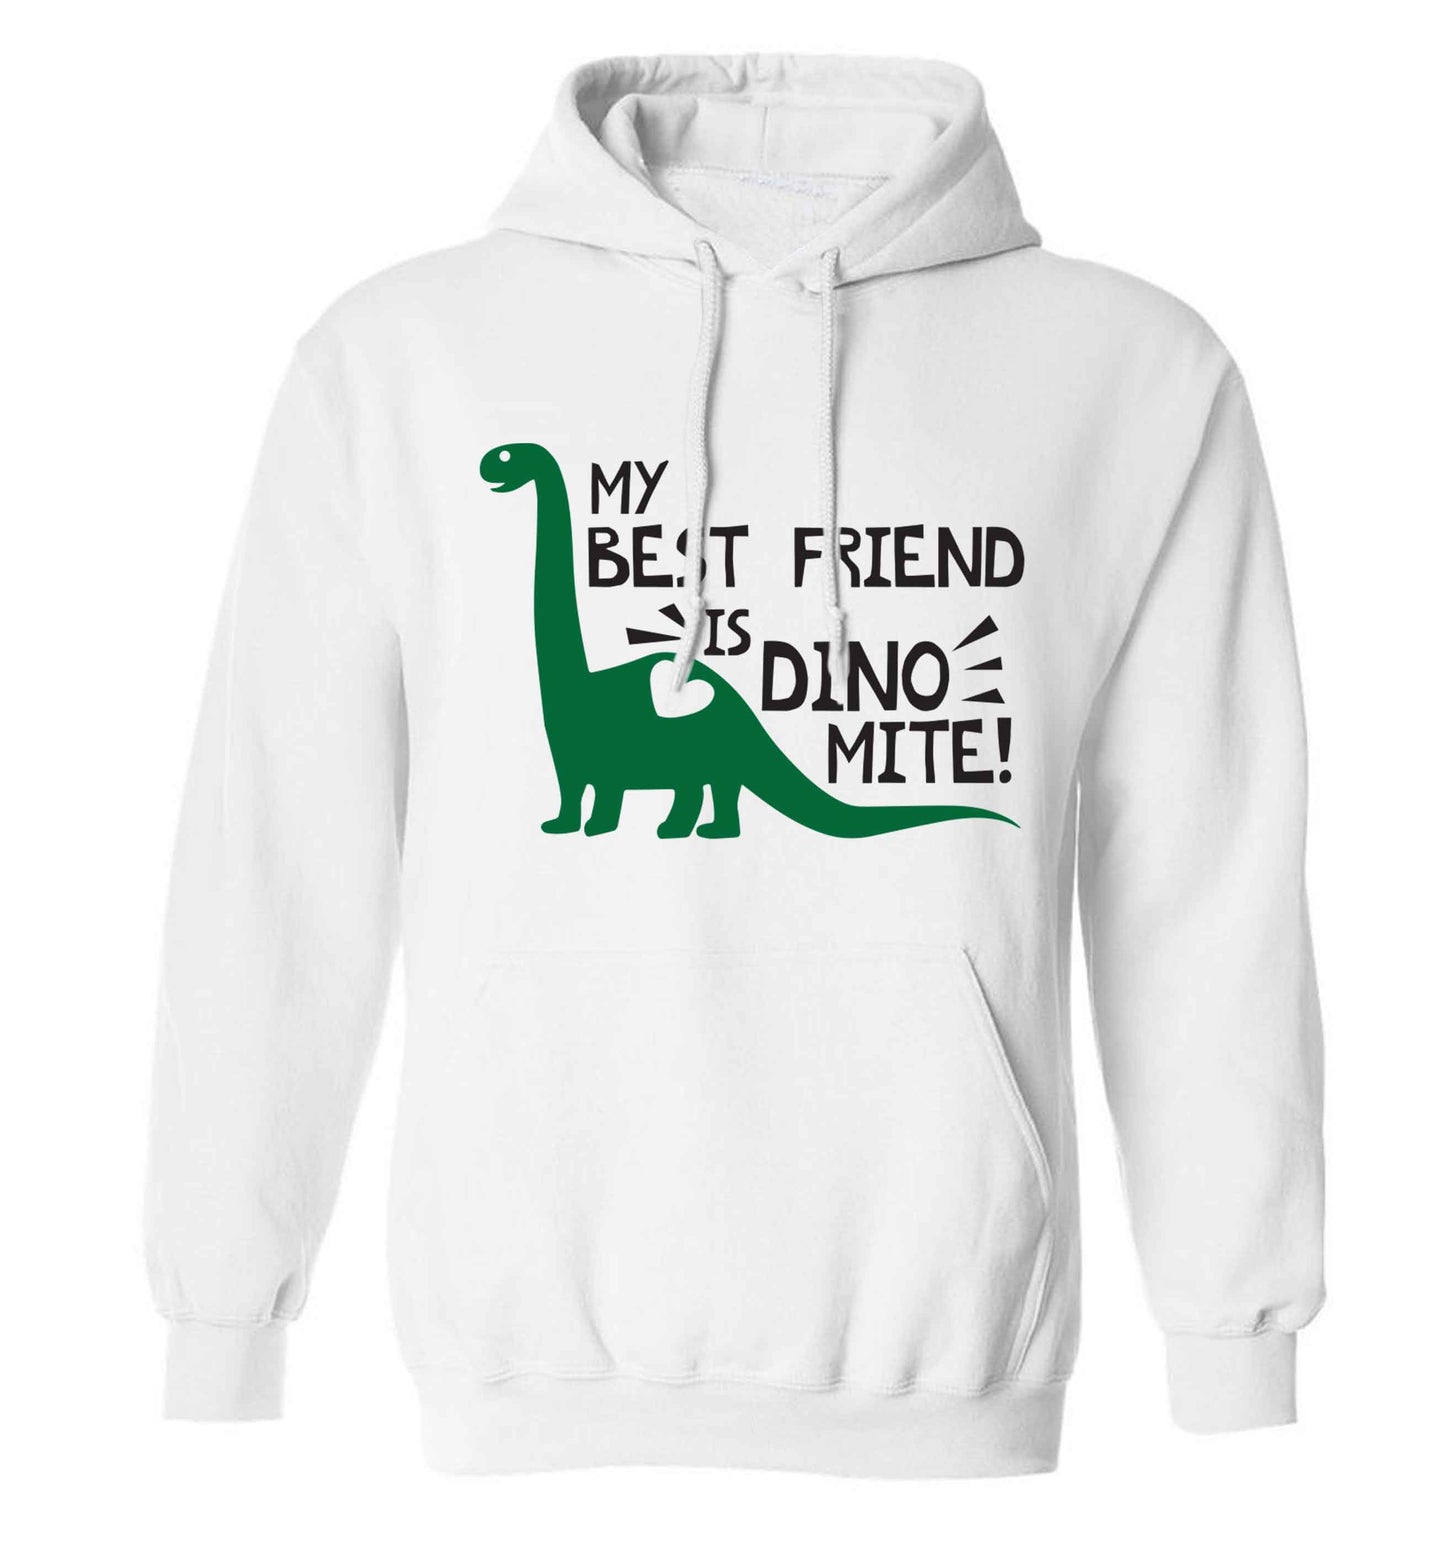 My best friend is dinomite! adults unisex white hoodie 2XL